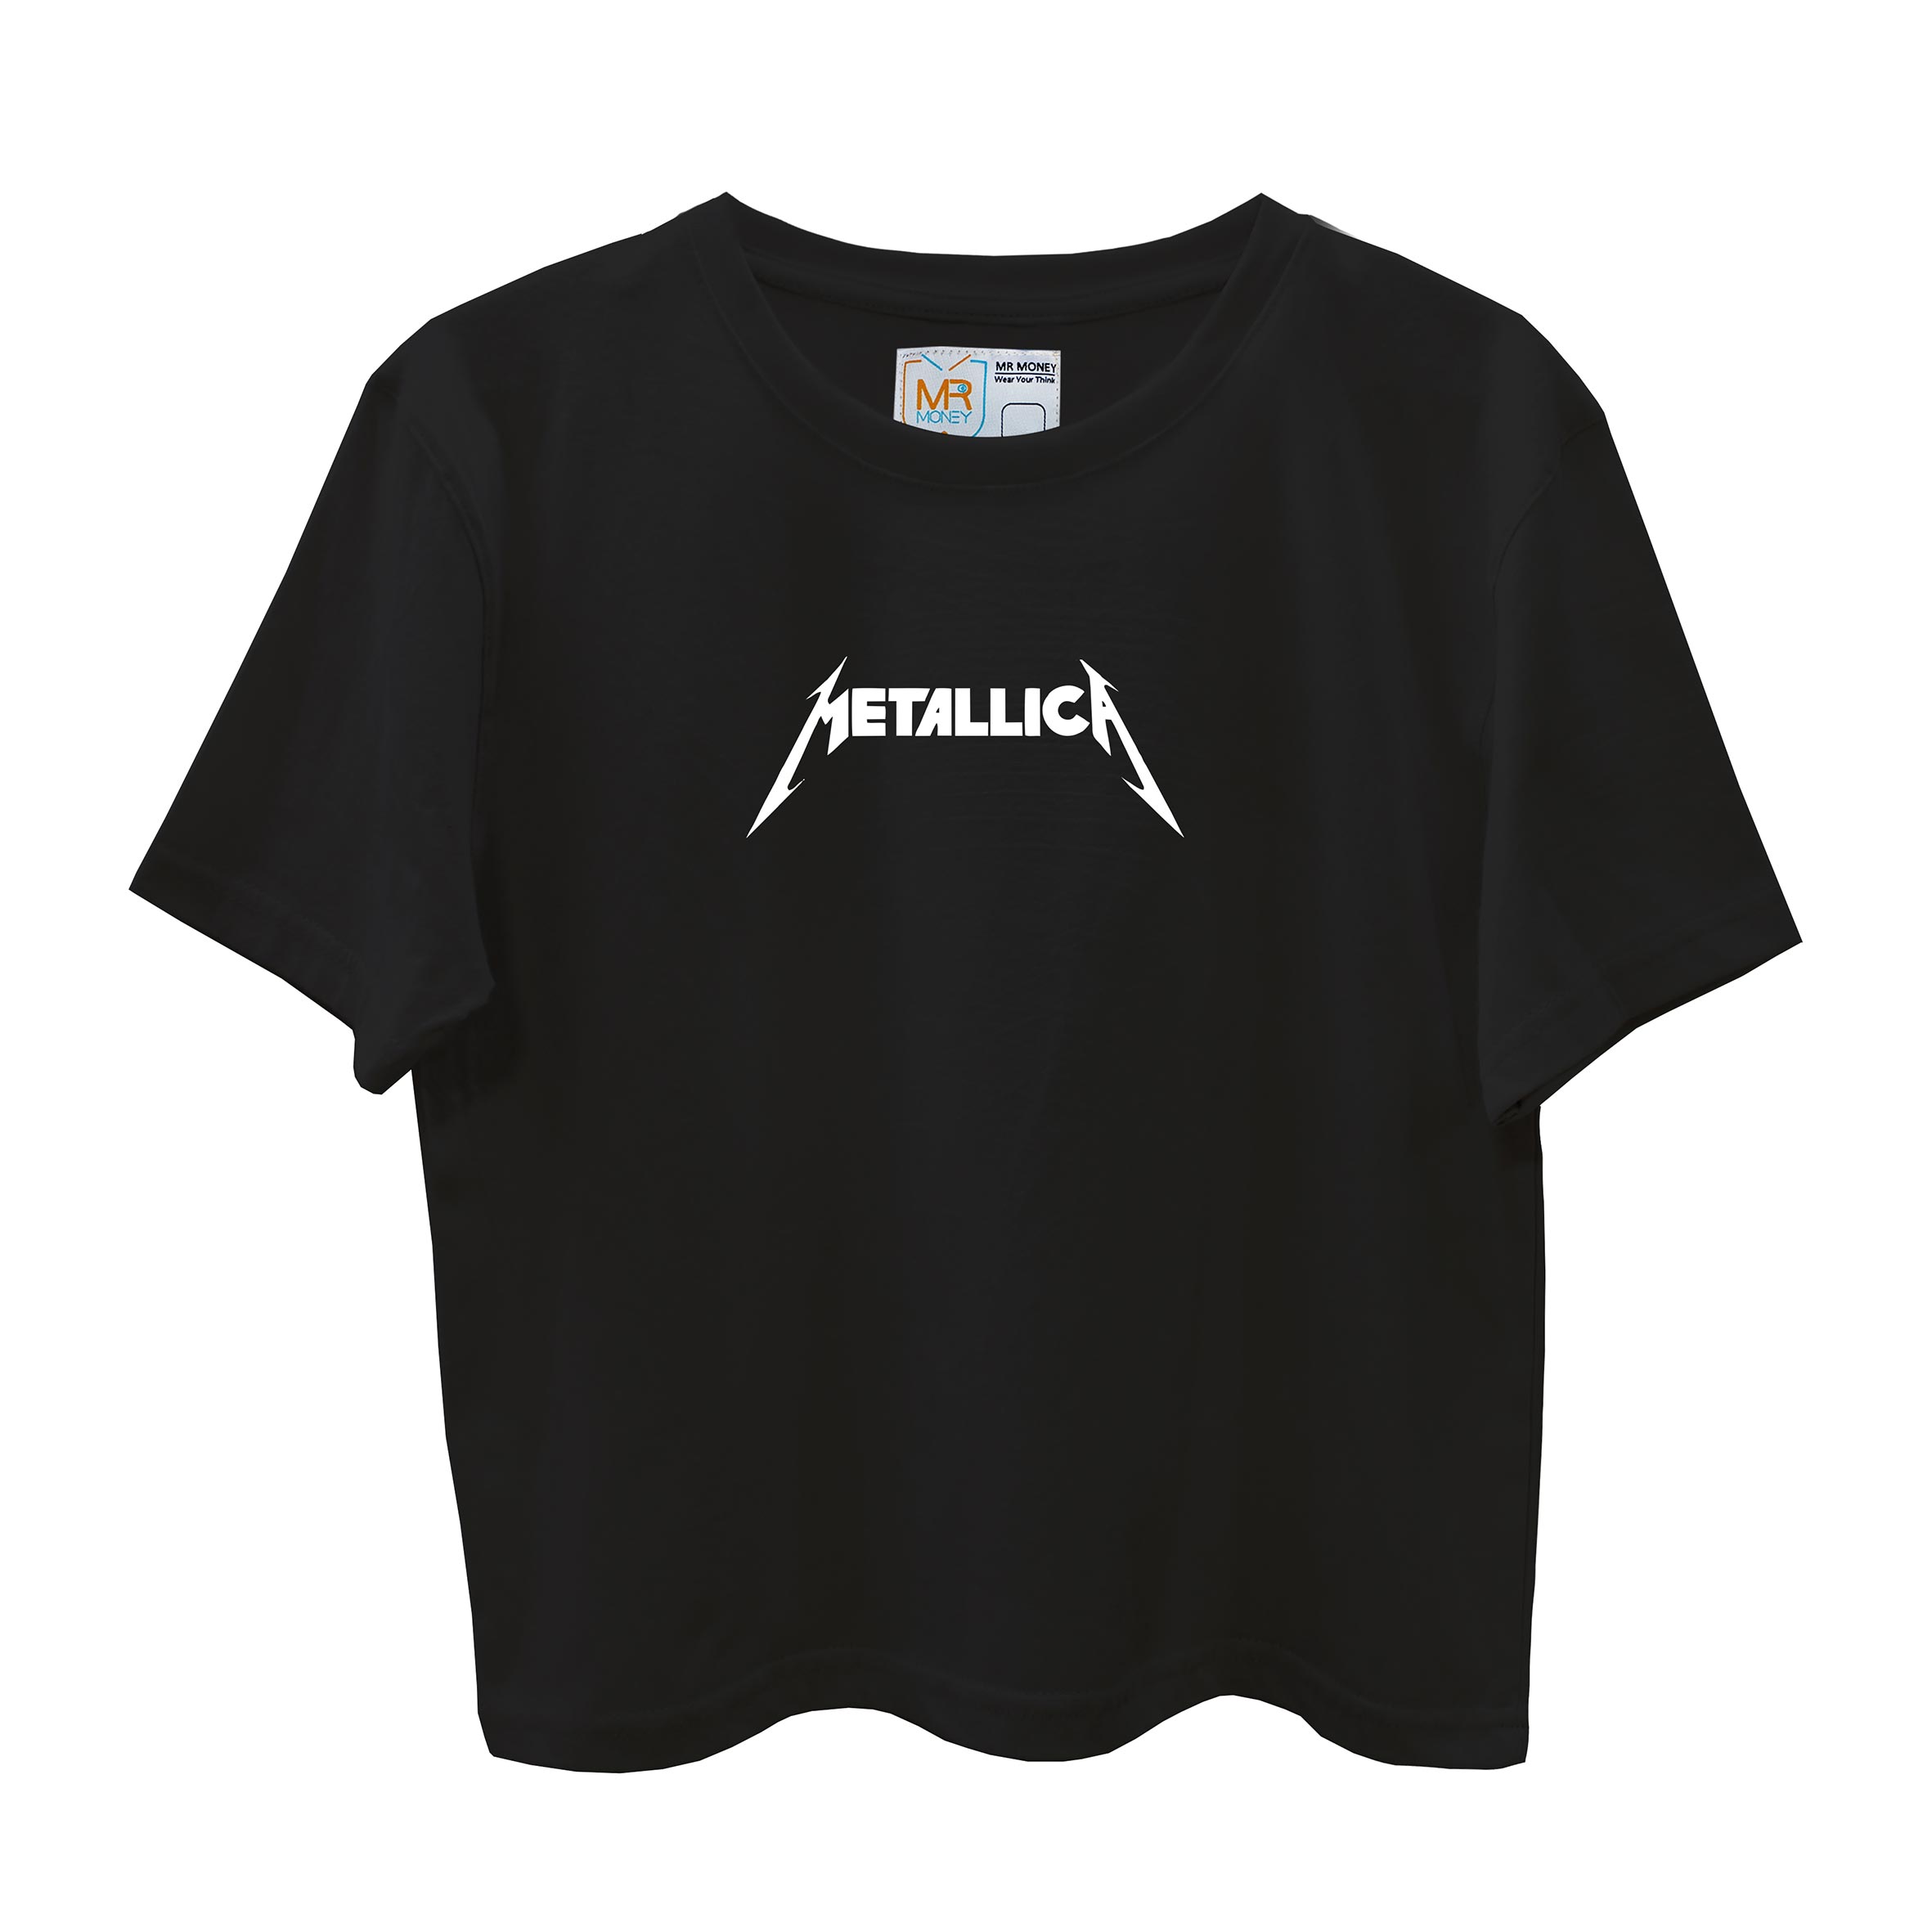 تی شرت آستین کوتاه زنانه مسترمانی مدل metallica -  - 2